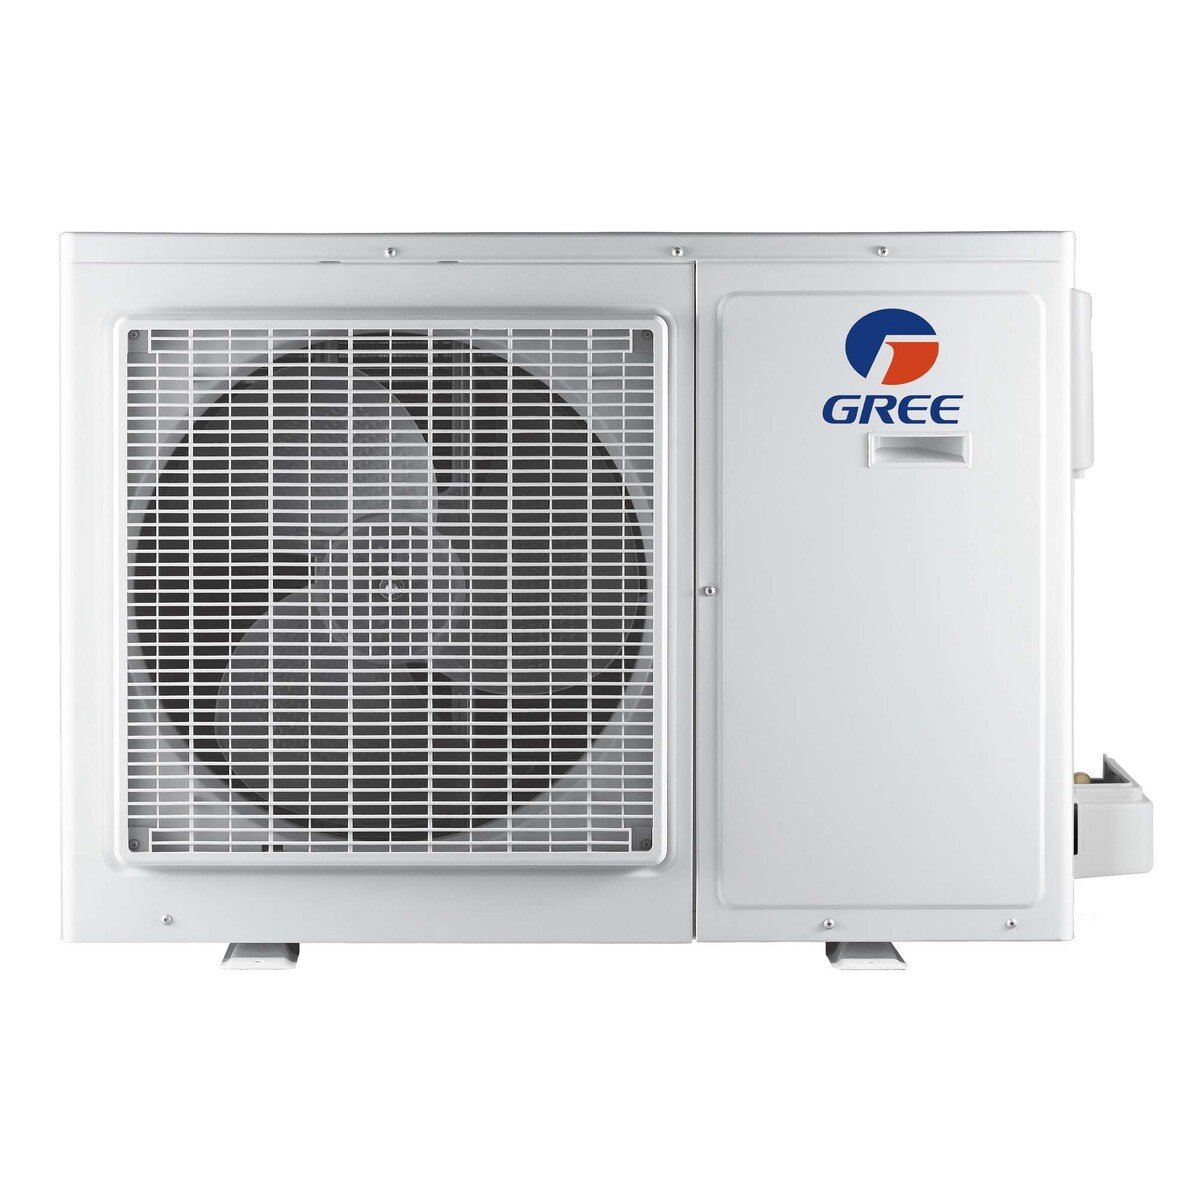 Gree Split Air Conditioner G4 MATIC-R20C3 1.5Ton, Piston Compressor, White